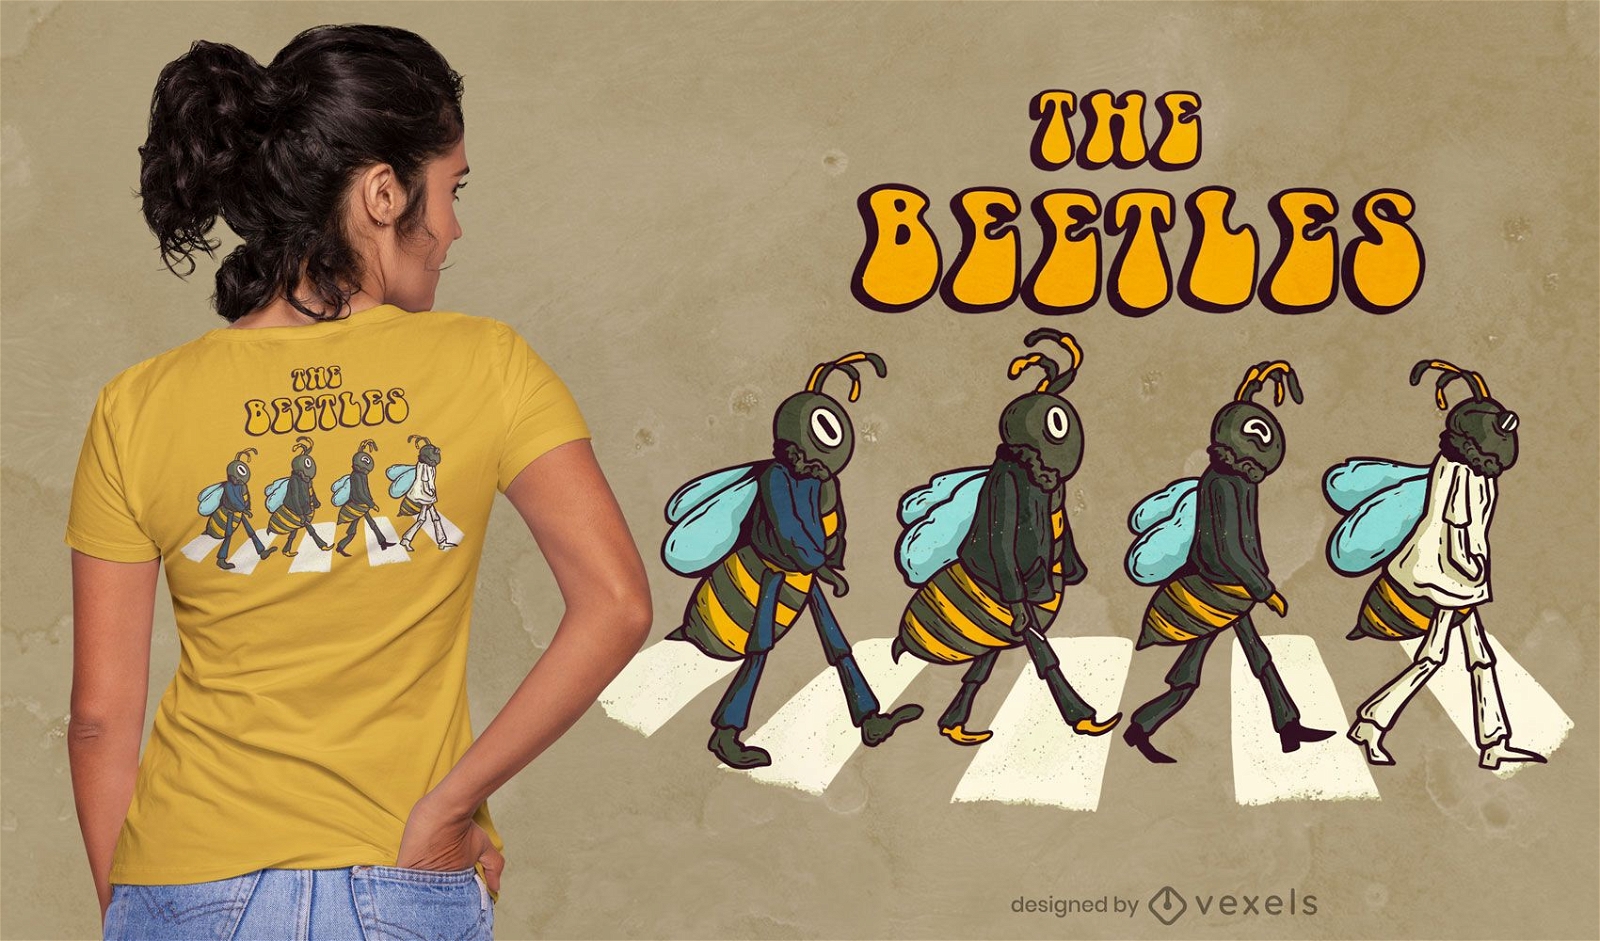 El dise?o de la camiseta de la parodia de los escarabajos.